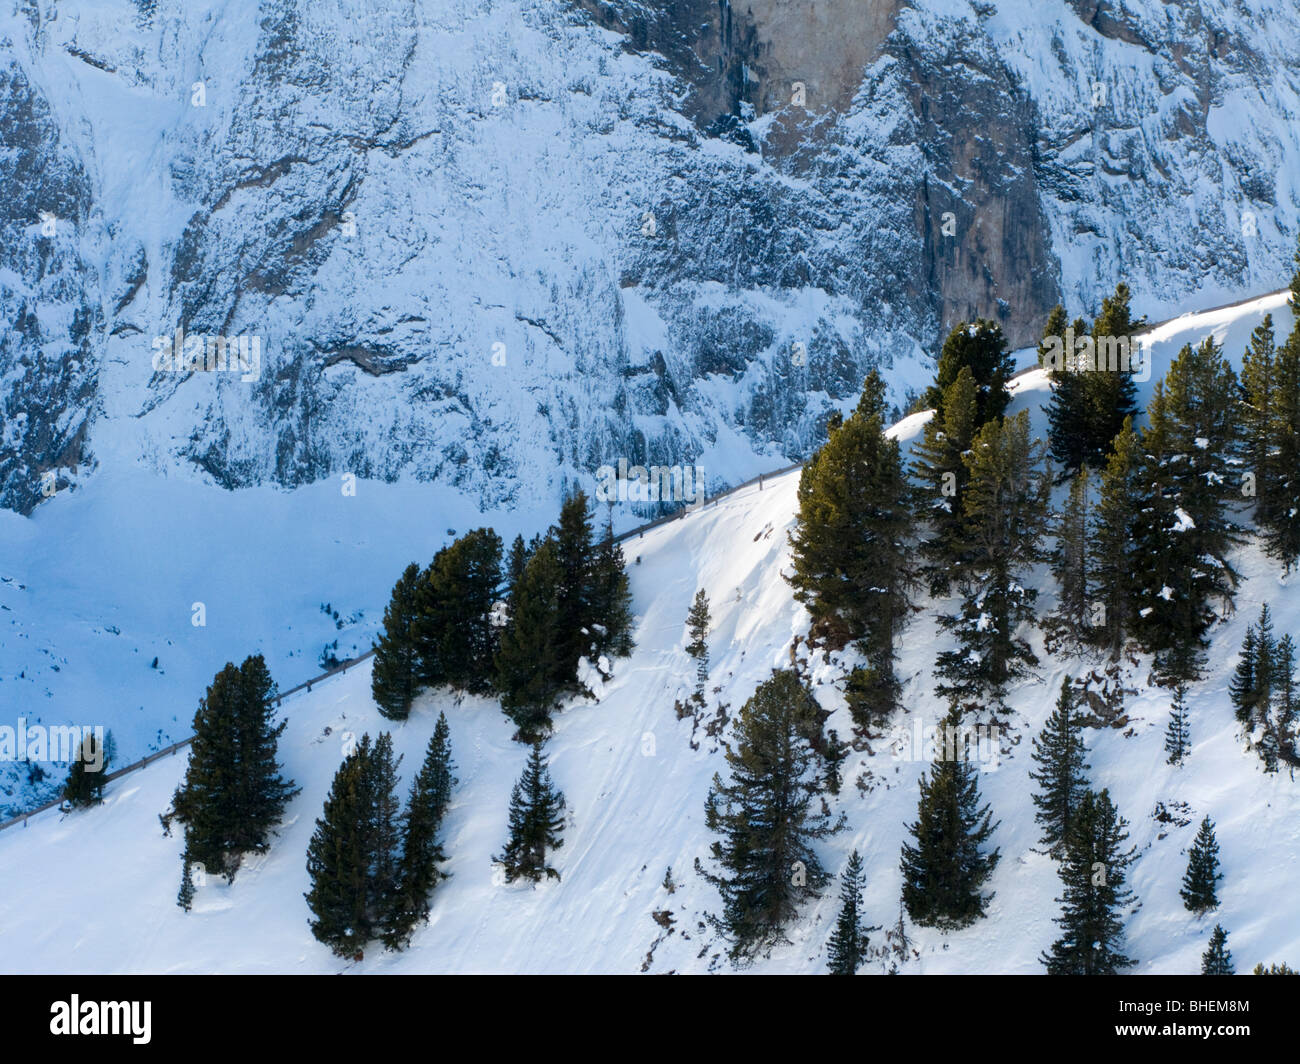 Sur les arbres du côté de la montagne. Dolomites près de Selva di Val Gardena, Italie. Banque D'Images